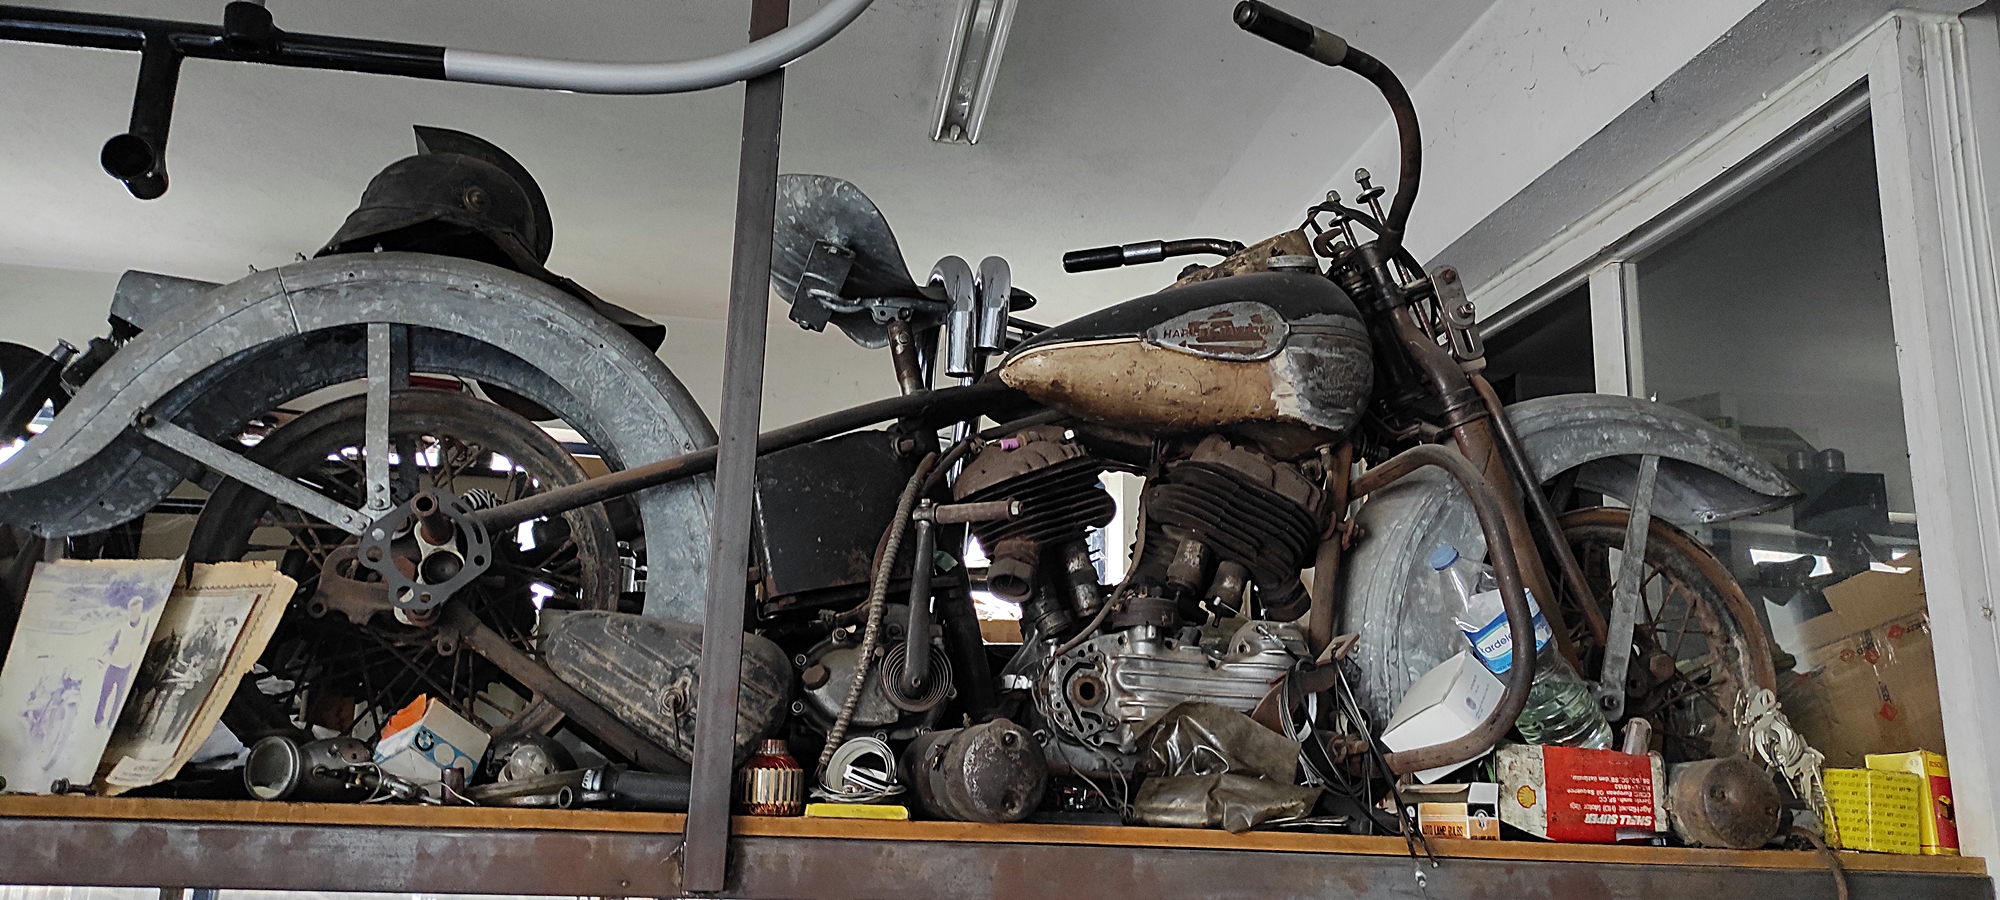 80-yillik-hurda-motosikletleri-tamir-edip-yeniden-kullanima-sunuyor-6423-dhaphoto8.jpg